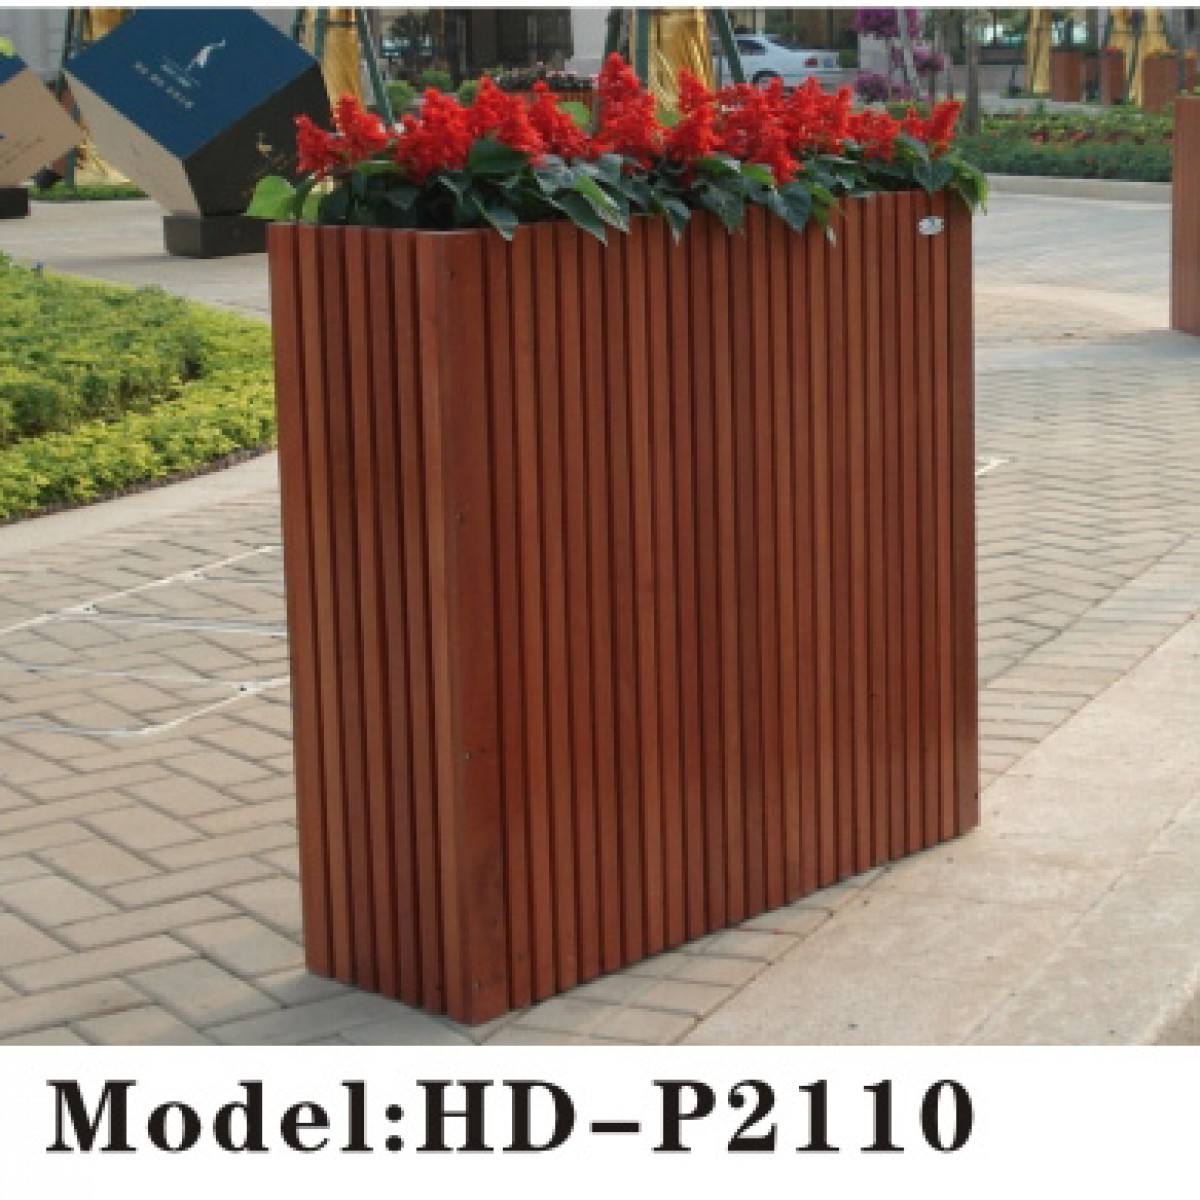 木製花箱(HD-P2110)